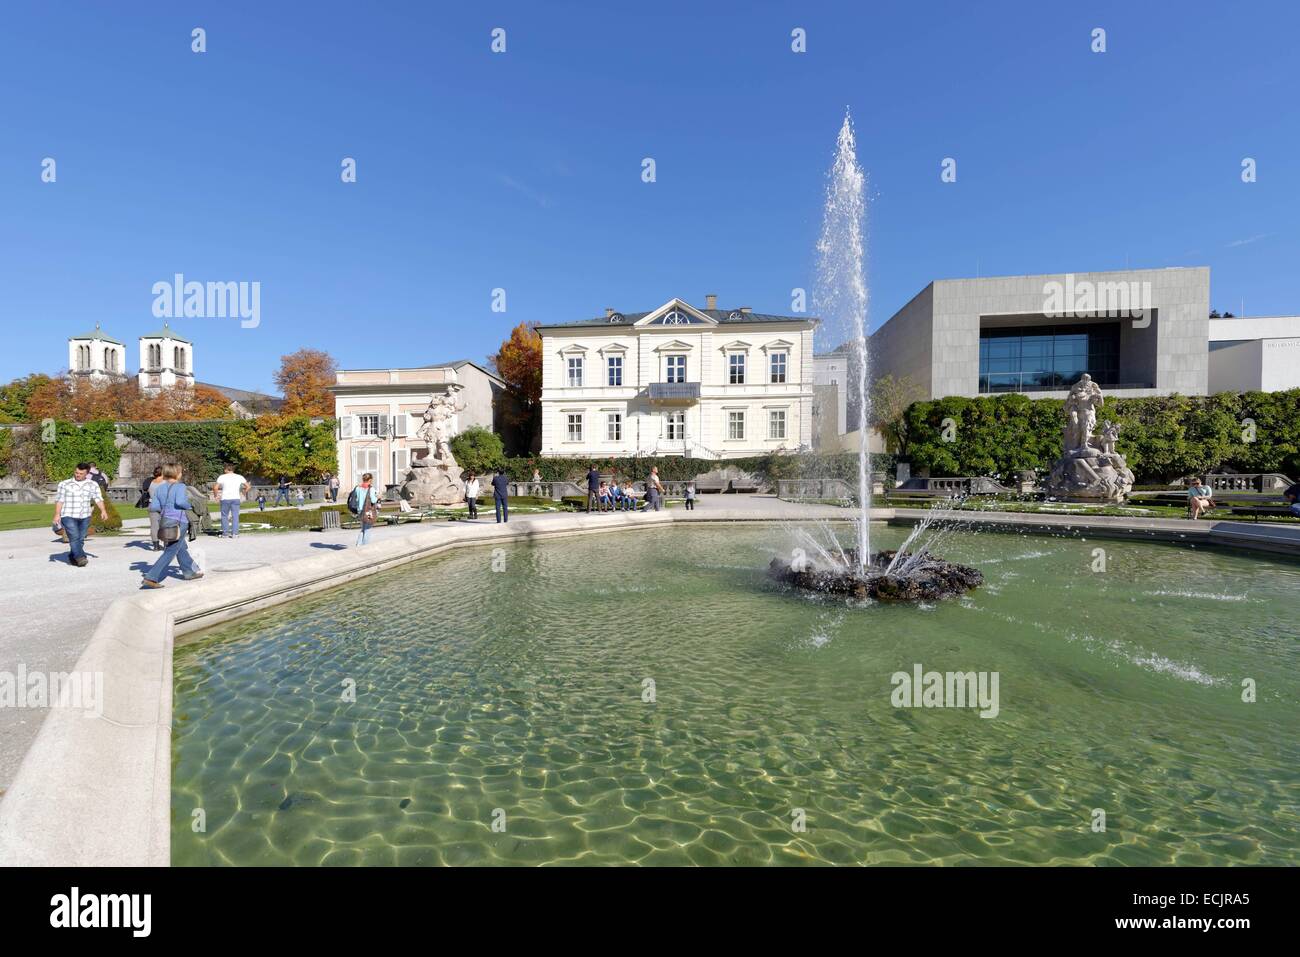 Autriche, Salzbourg, le centre historique classé au Patrimoine Mondial par l'UNESCO, les jardins du château Mirabell et de l'université de Musique Mozarteum Banque D'Images